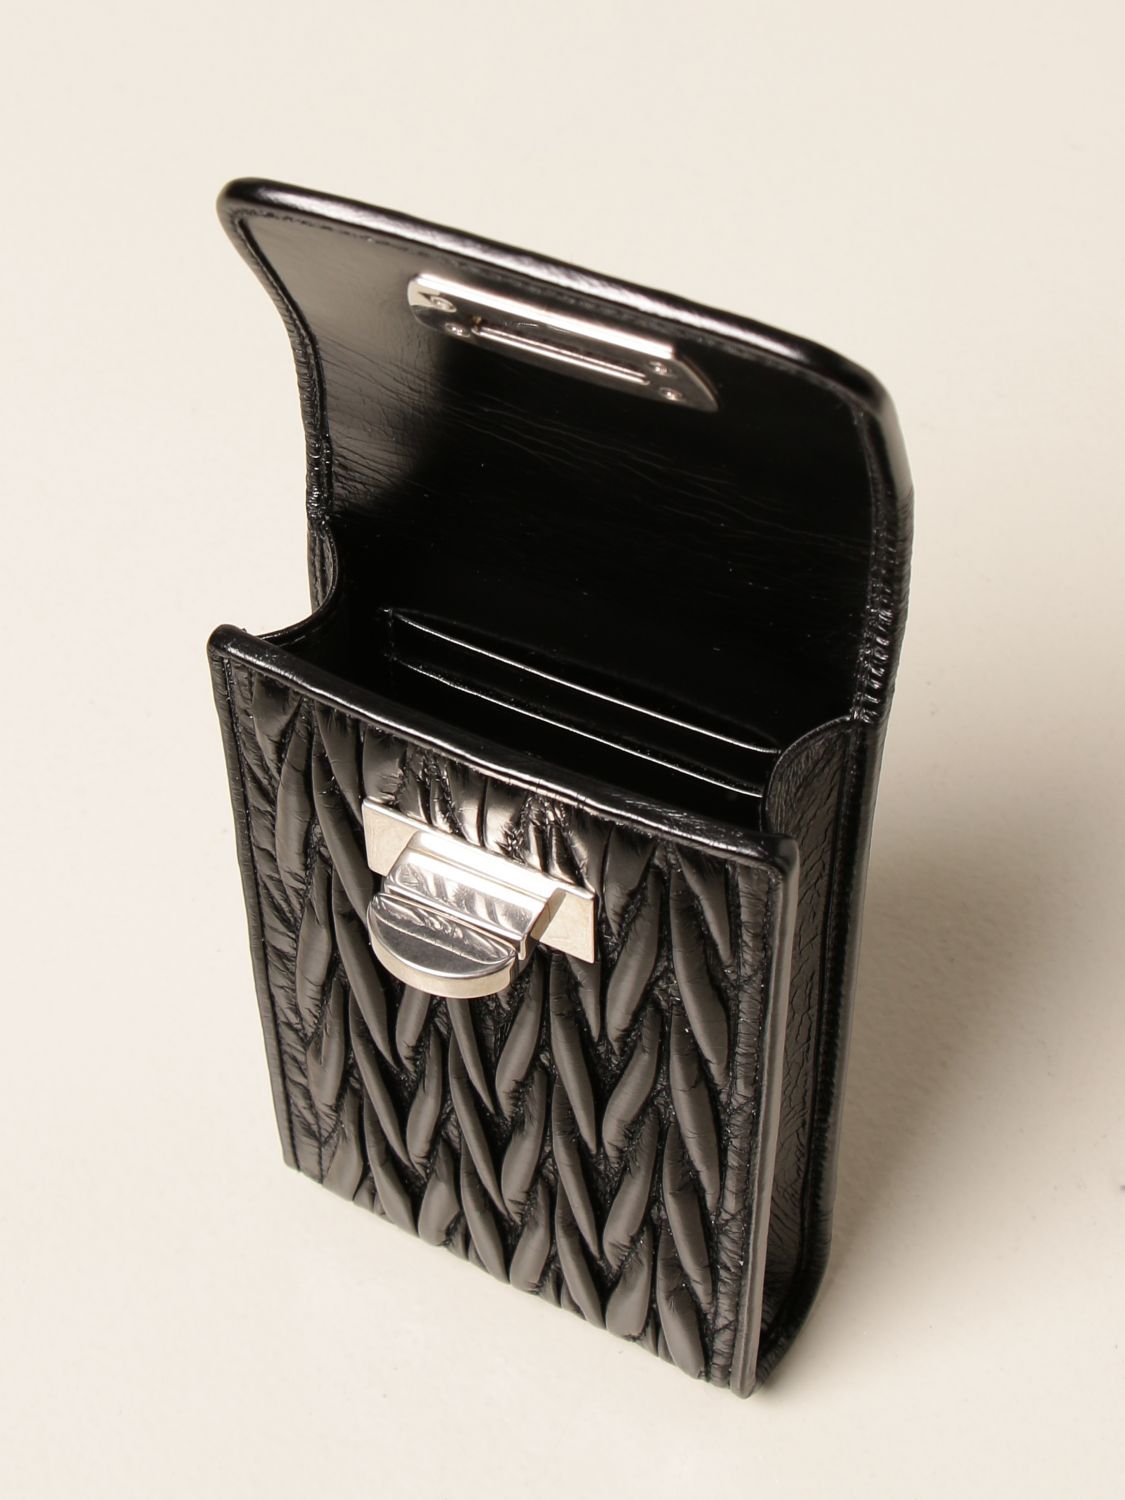 Miu Miu cell phone holder in matelassé leather